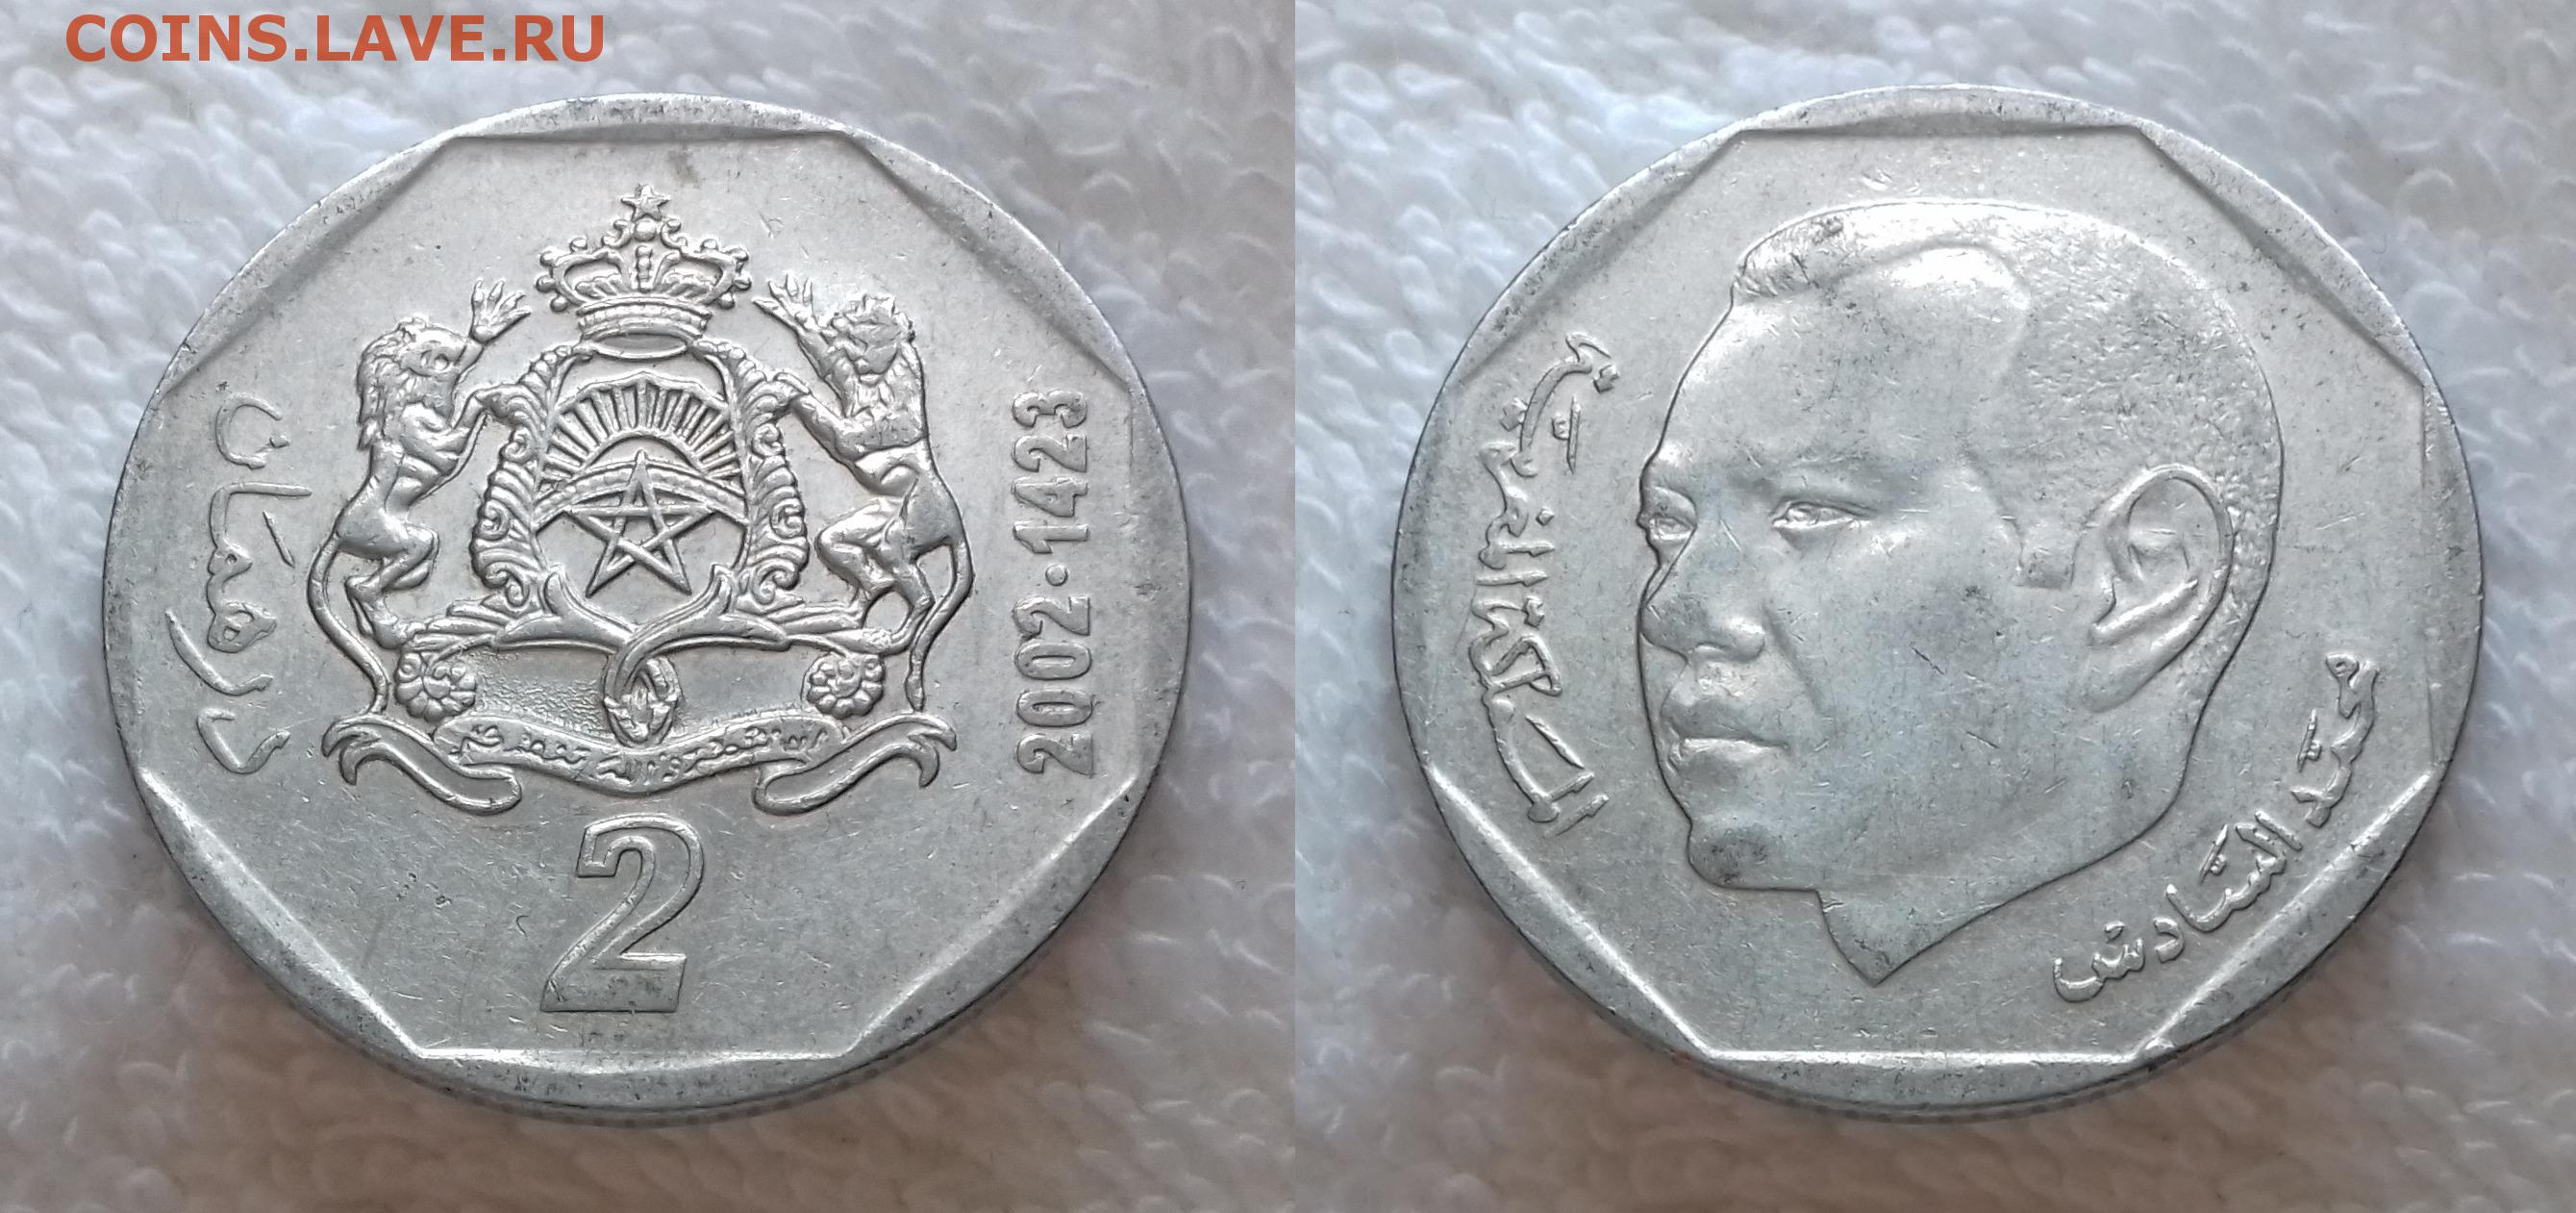 2 дирхама. Монета 2 дирхама Марокко 2002 года. 100 Марокканских дирхамов монета 2008. Монета 2 дирхама Египет. Марокко 0,5 dirham 2002.